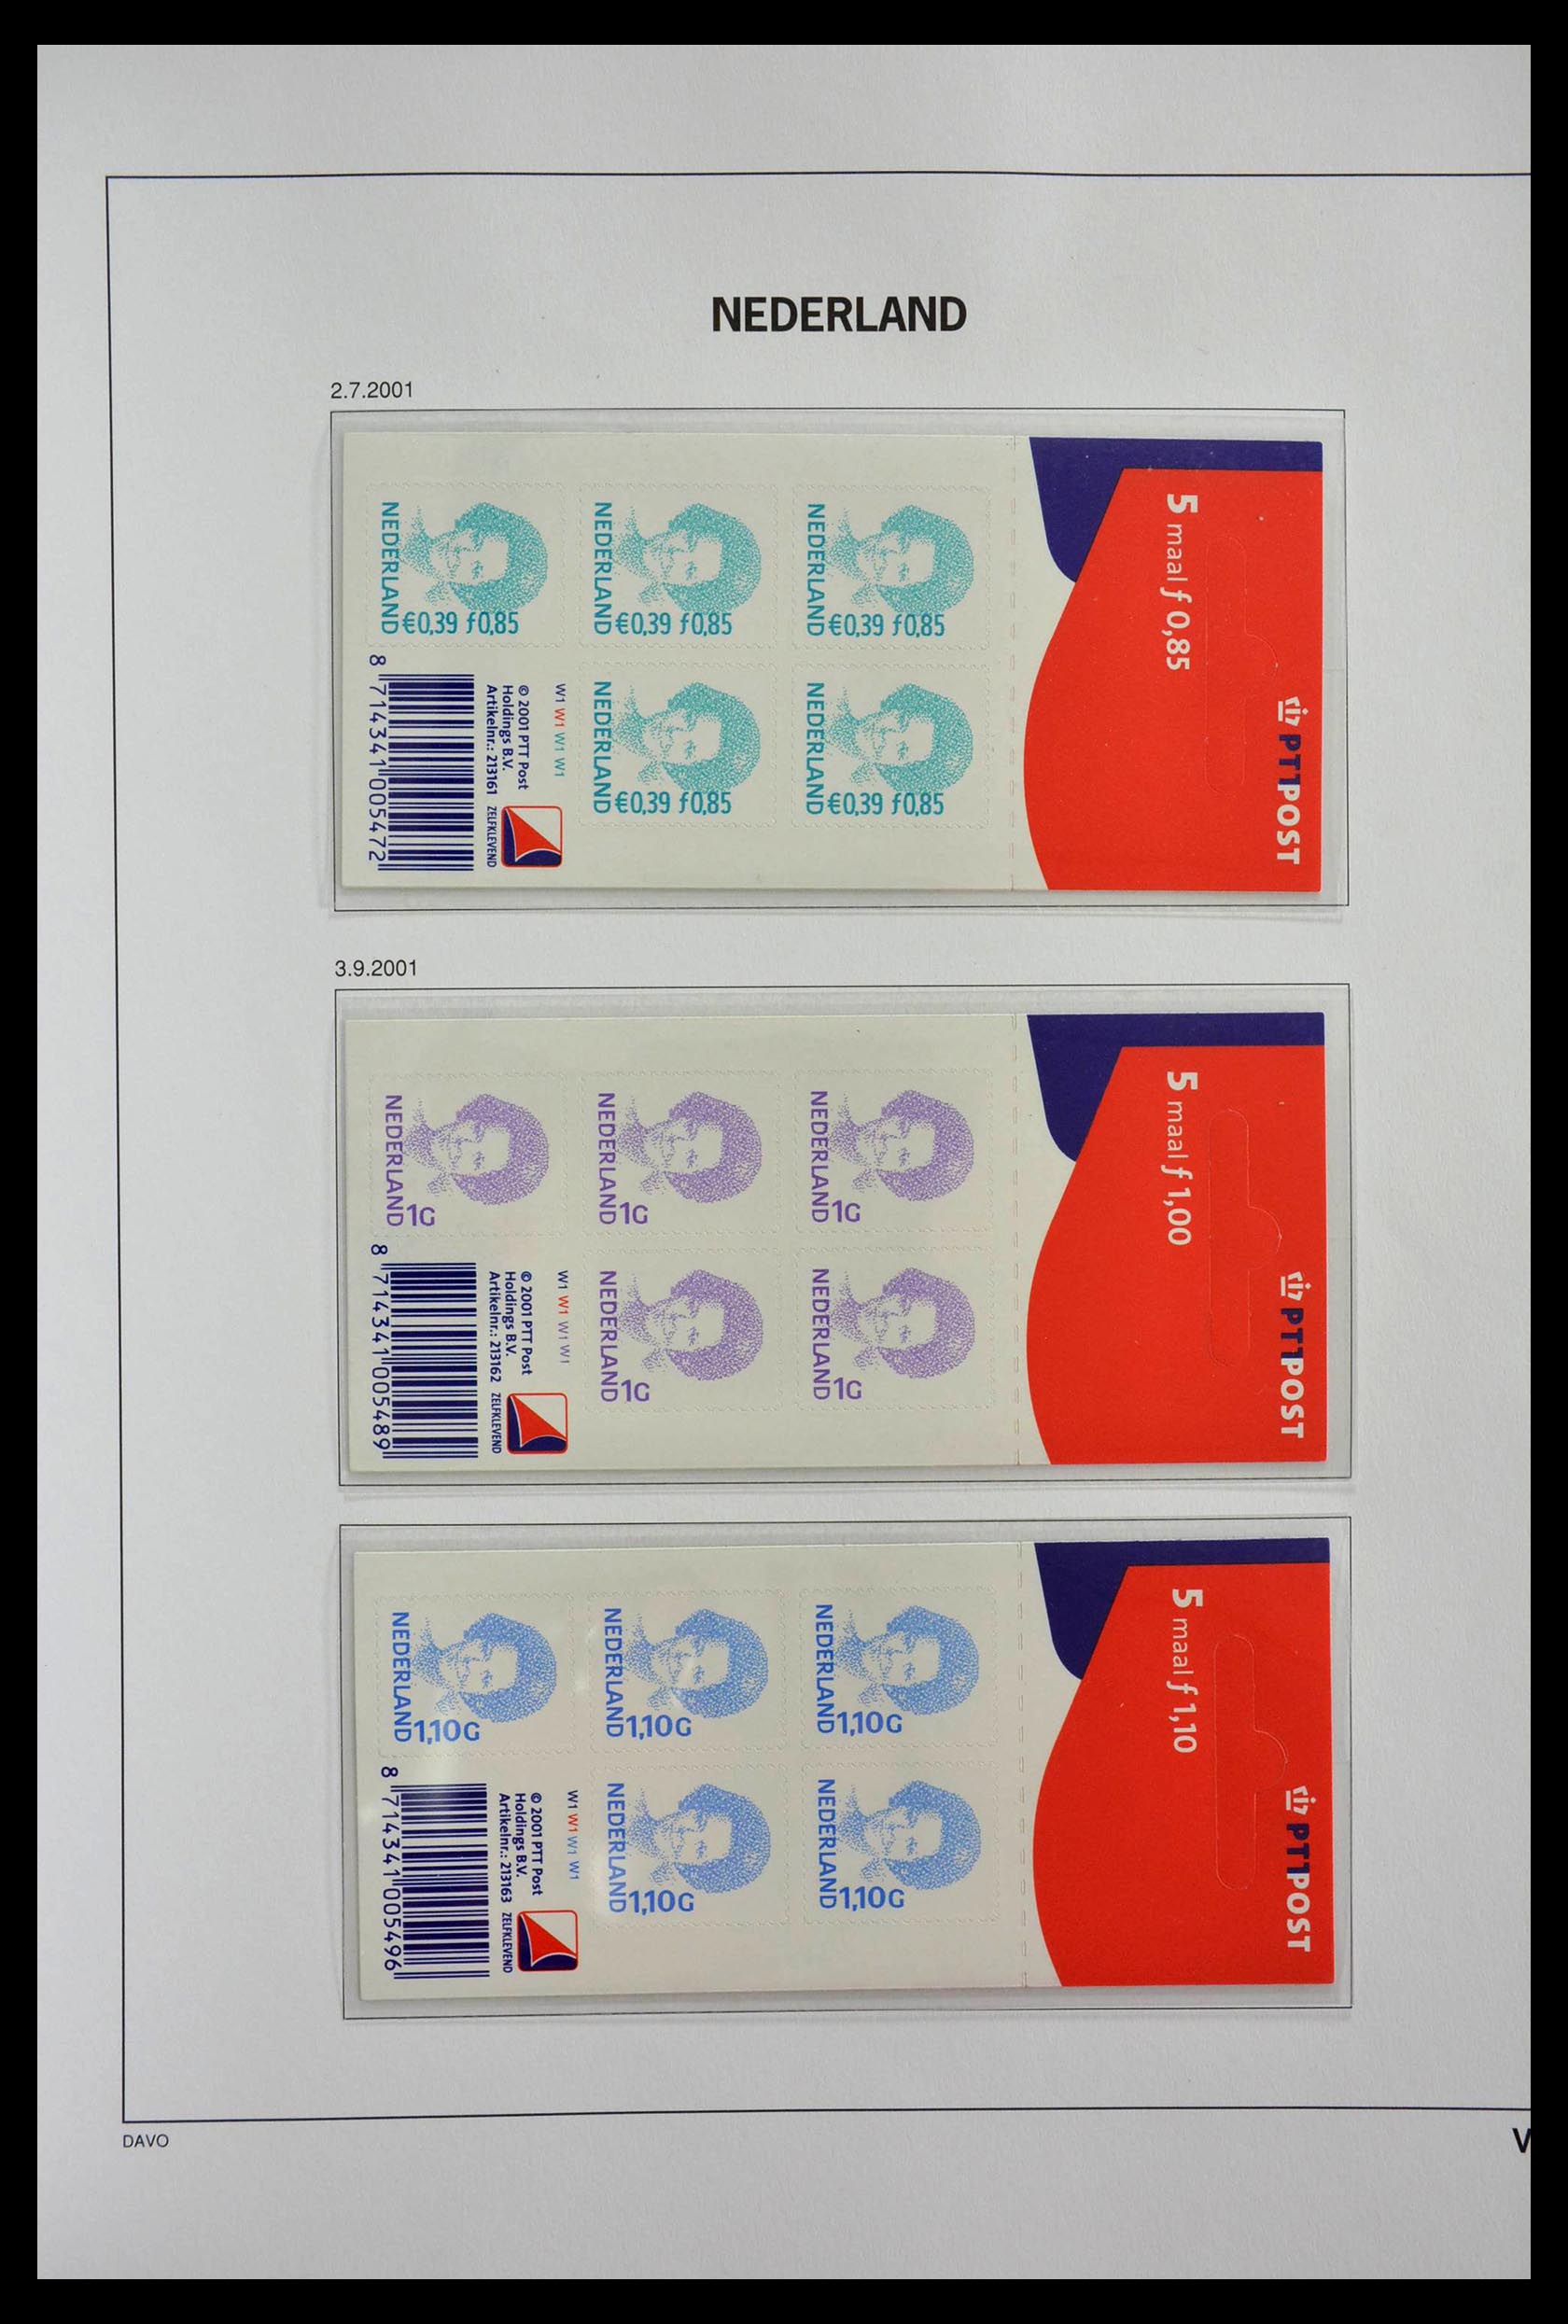 28853 034 - 28853 Netherlands stampbooklets 1964-2005.